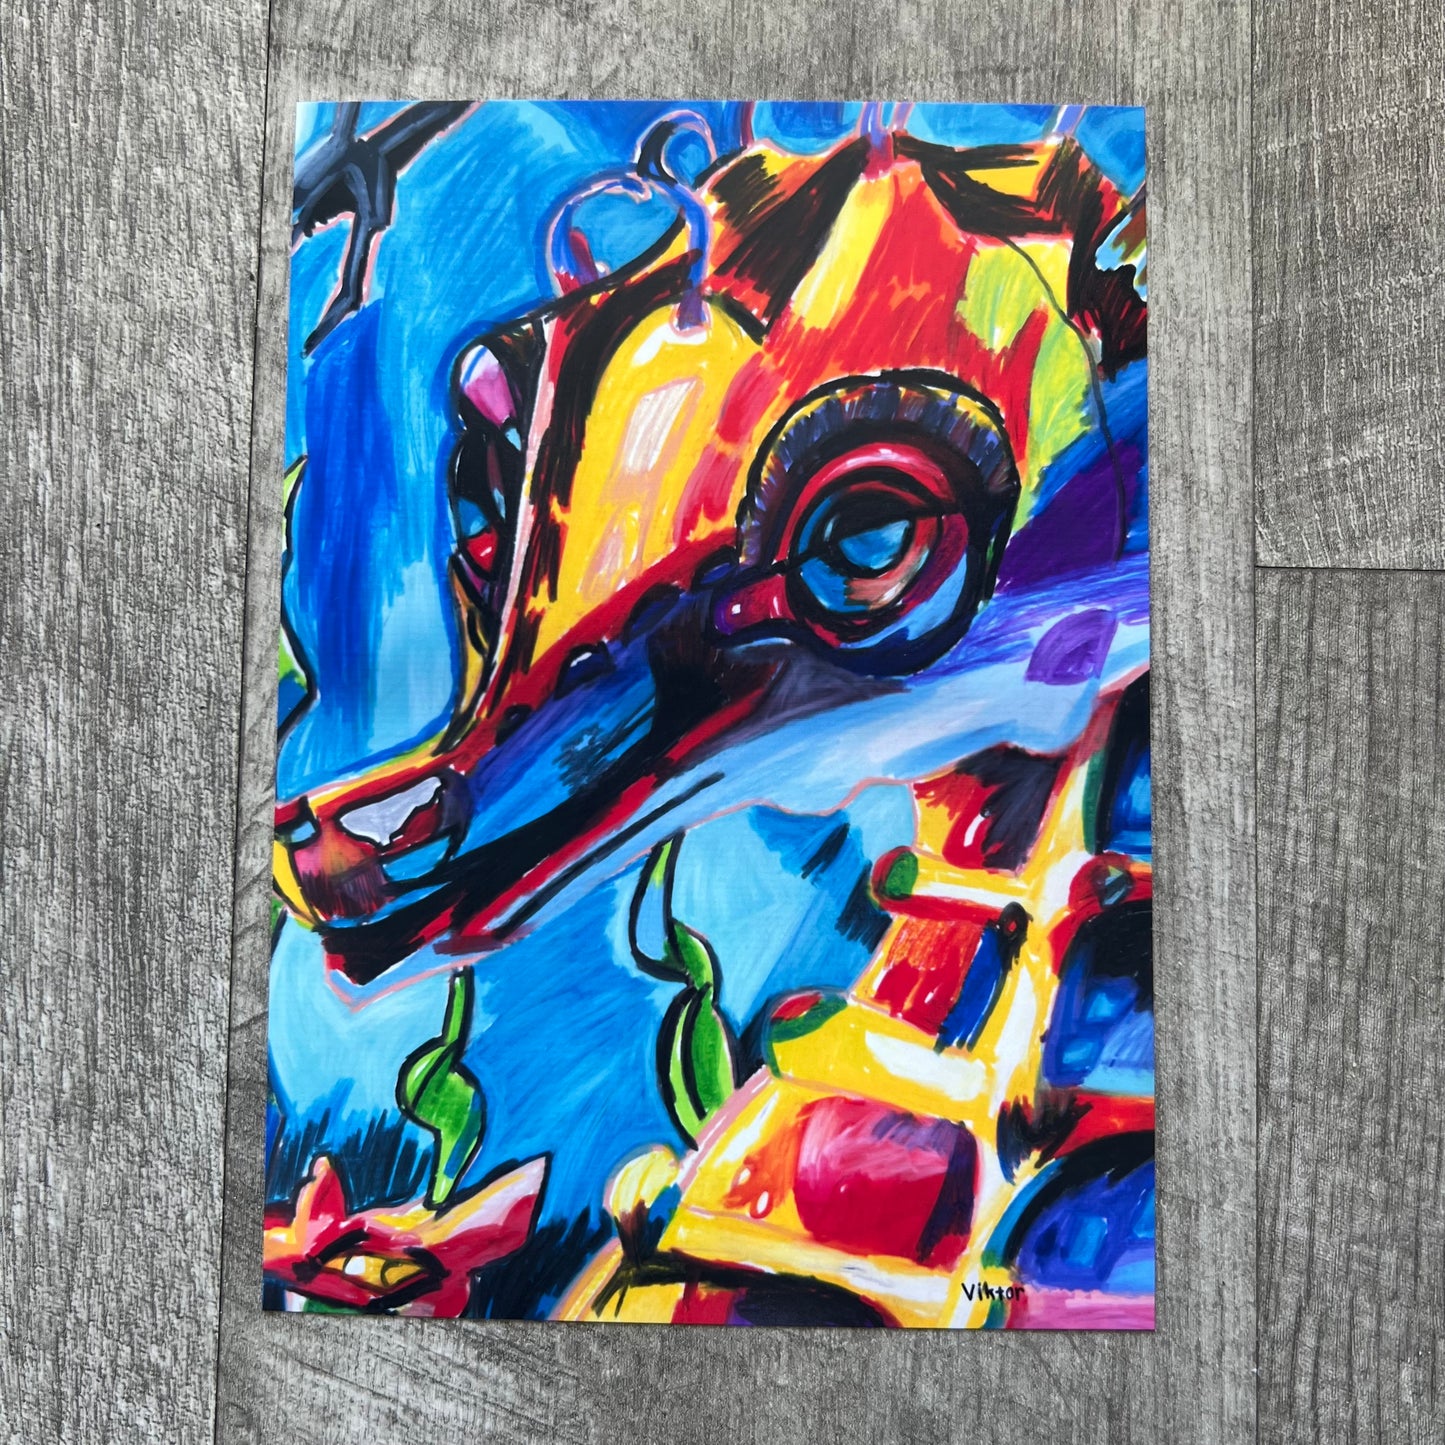 Colorful Seahorses - set of 4 paper prints/canvas prints